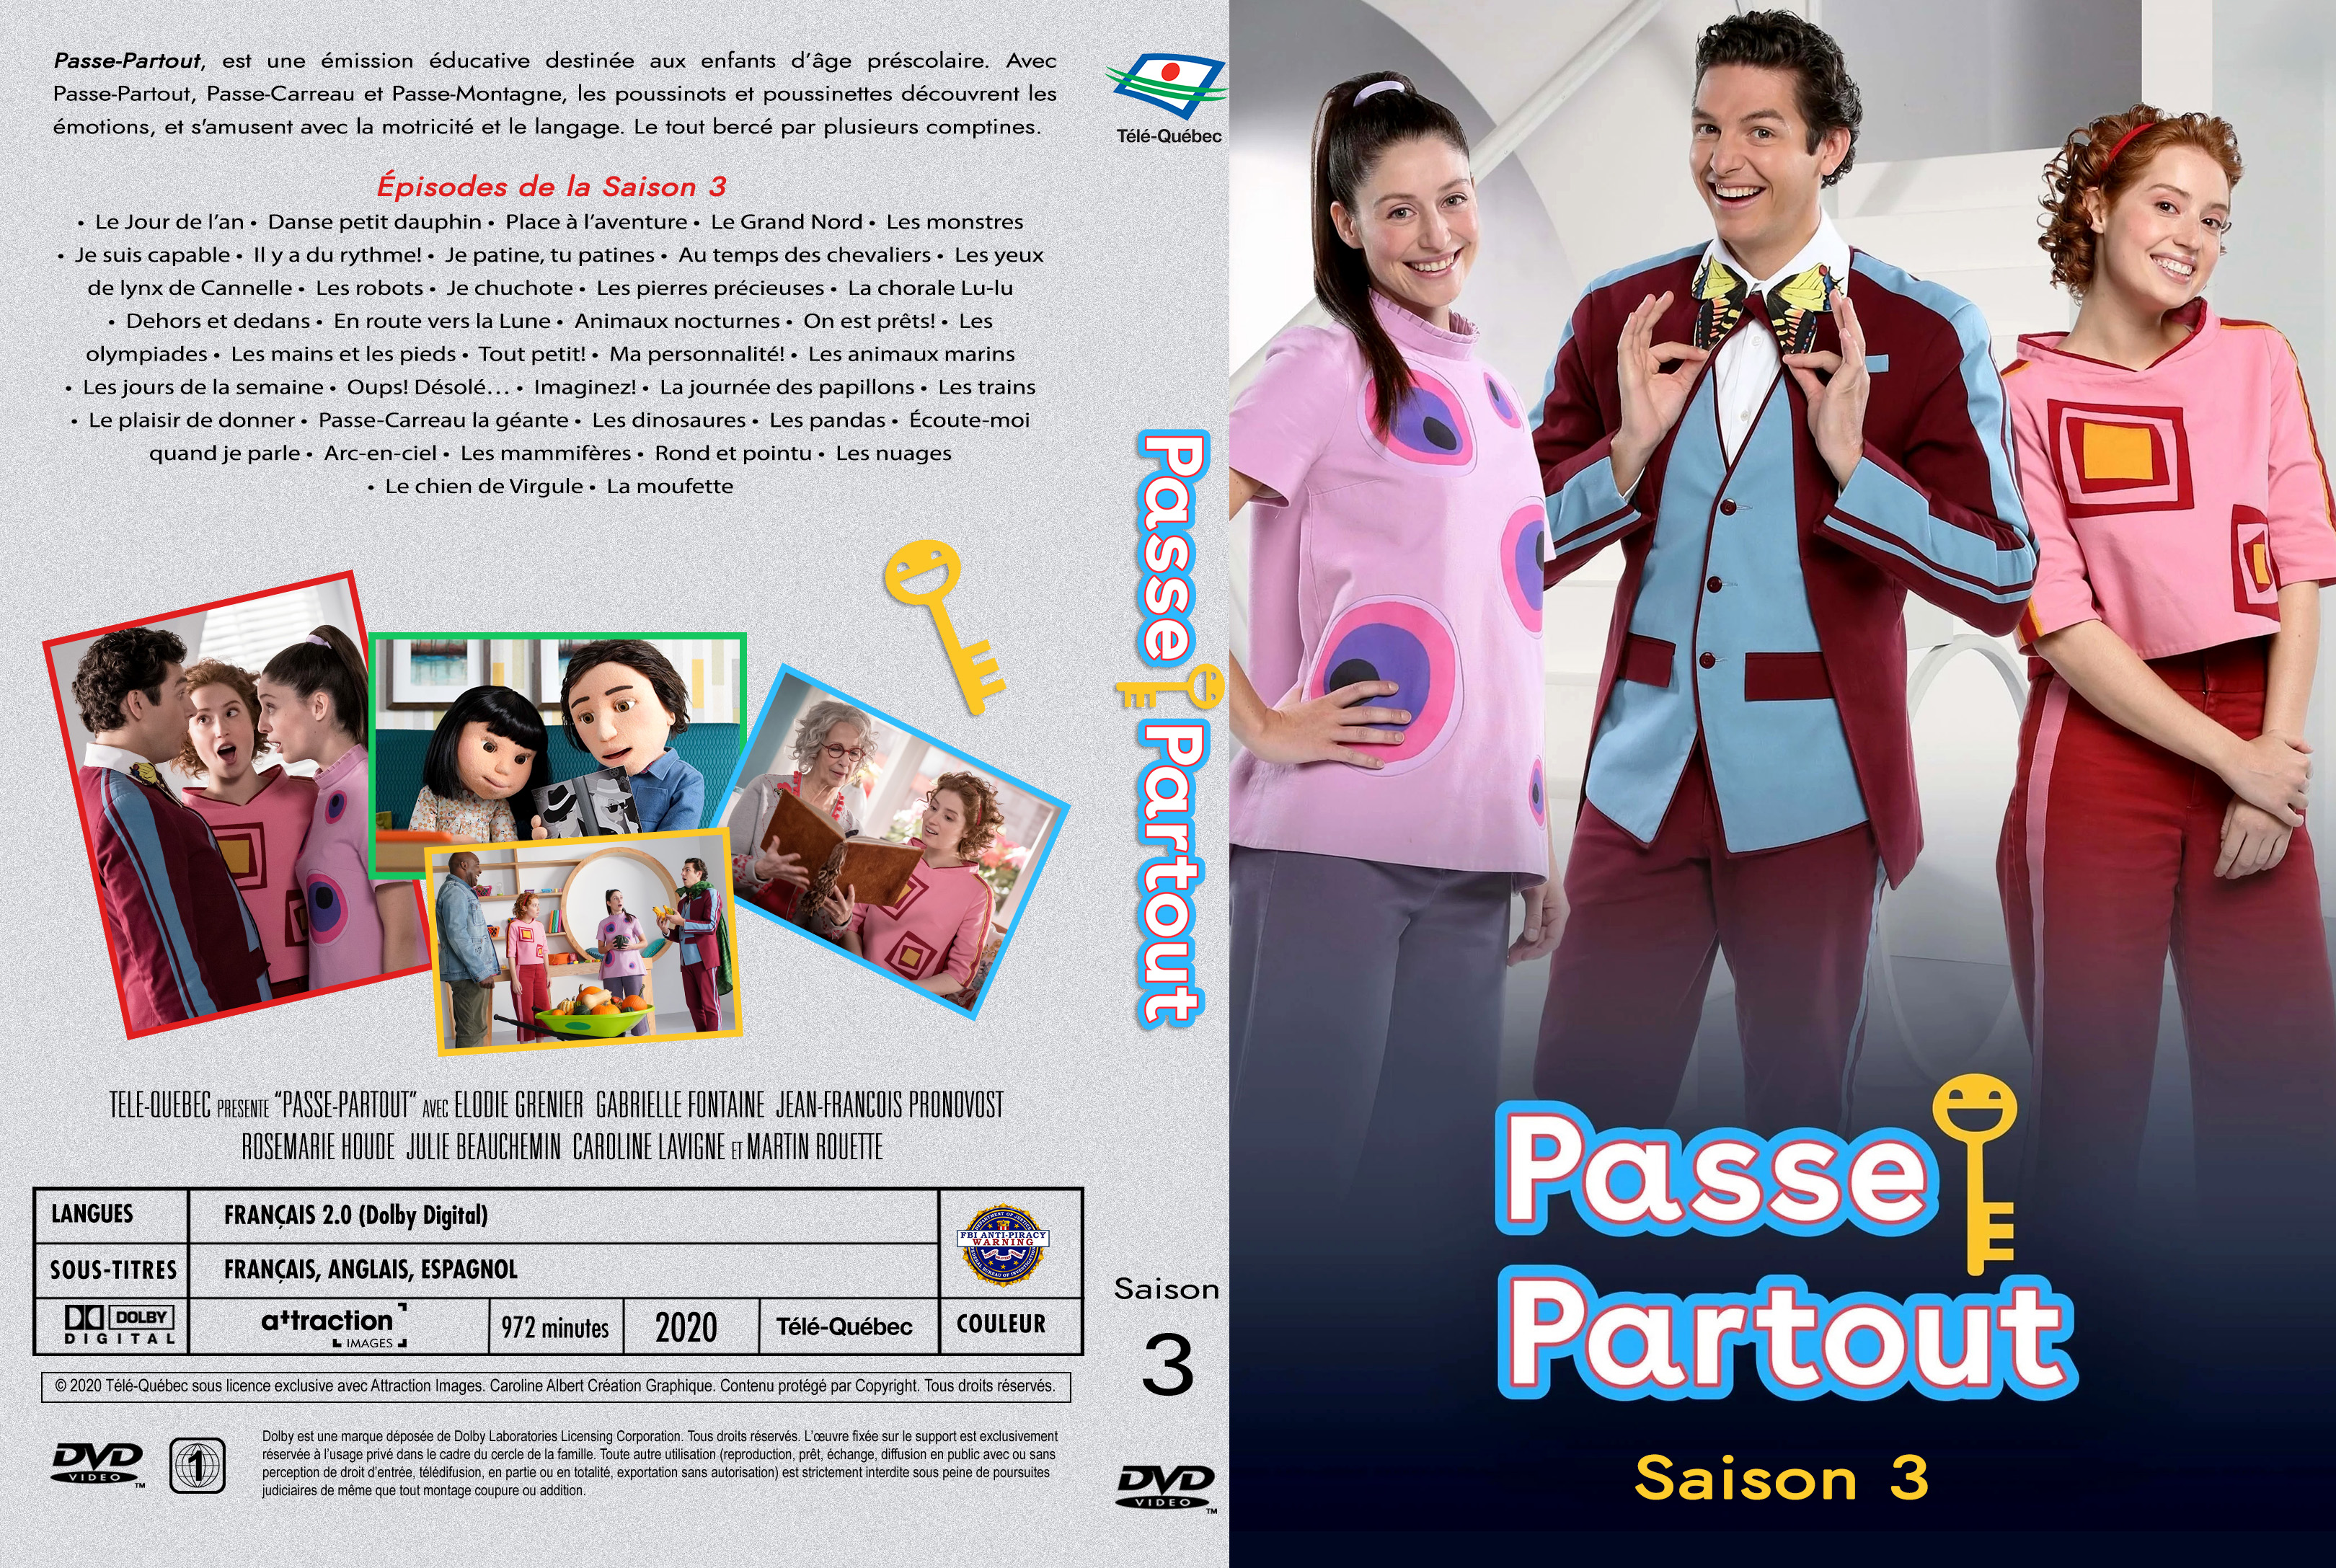 Jaquette DVD Passe-Partout Saison 3 custom